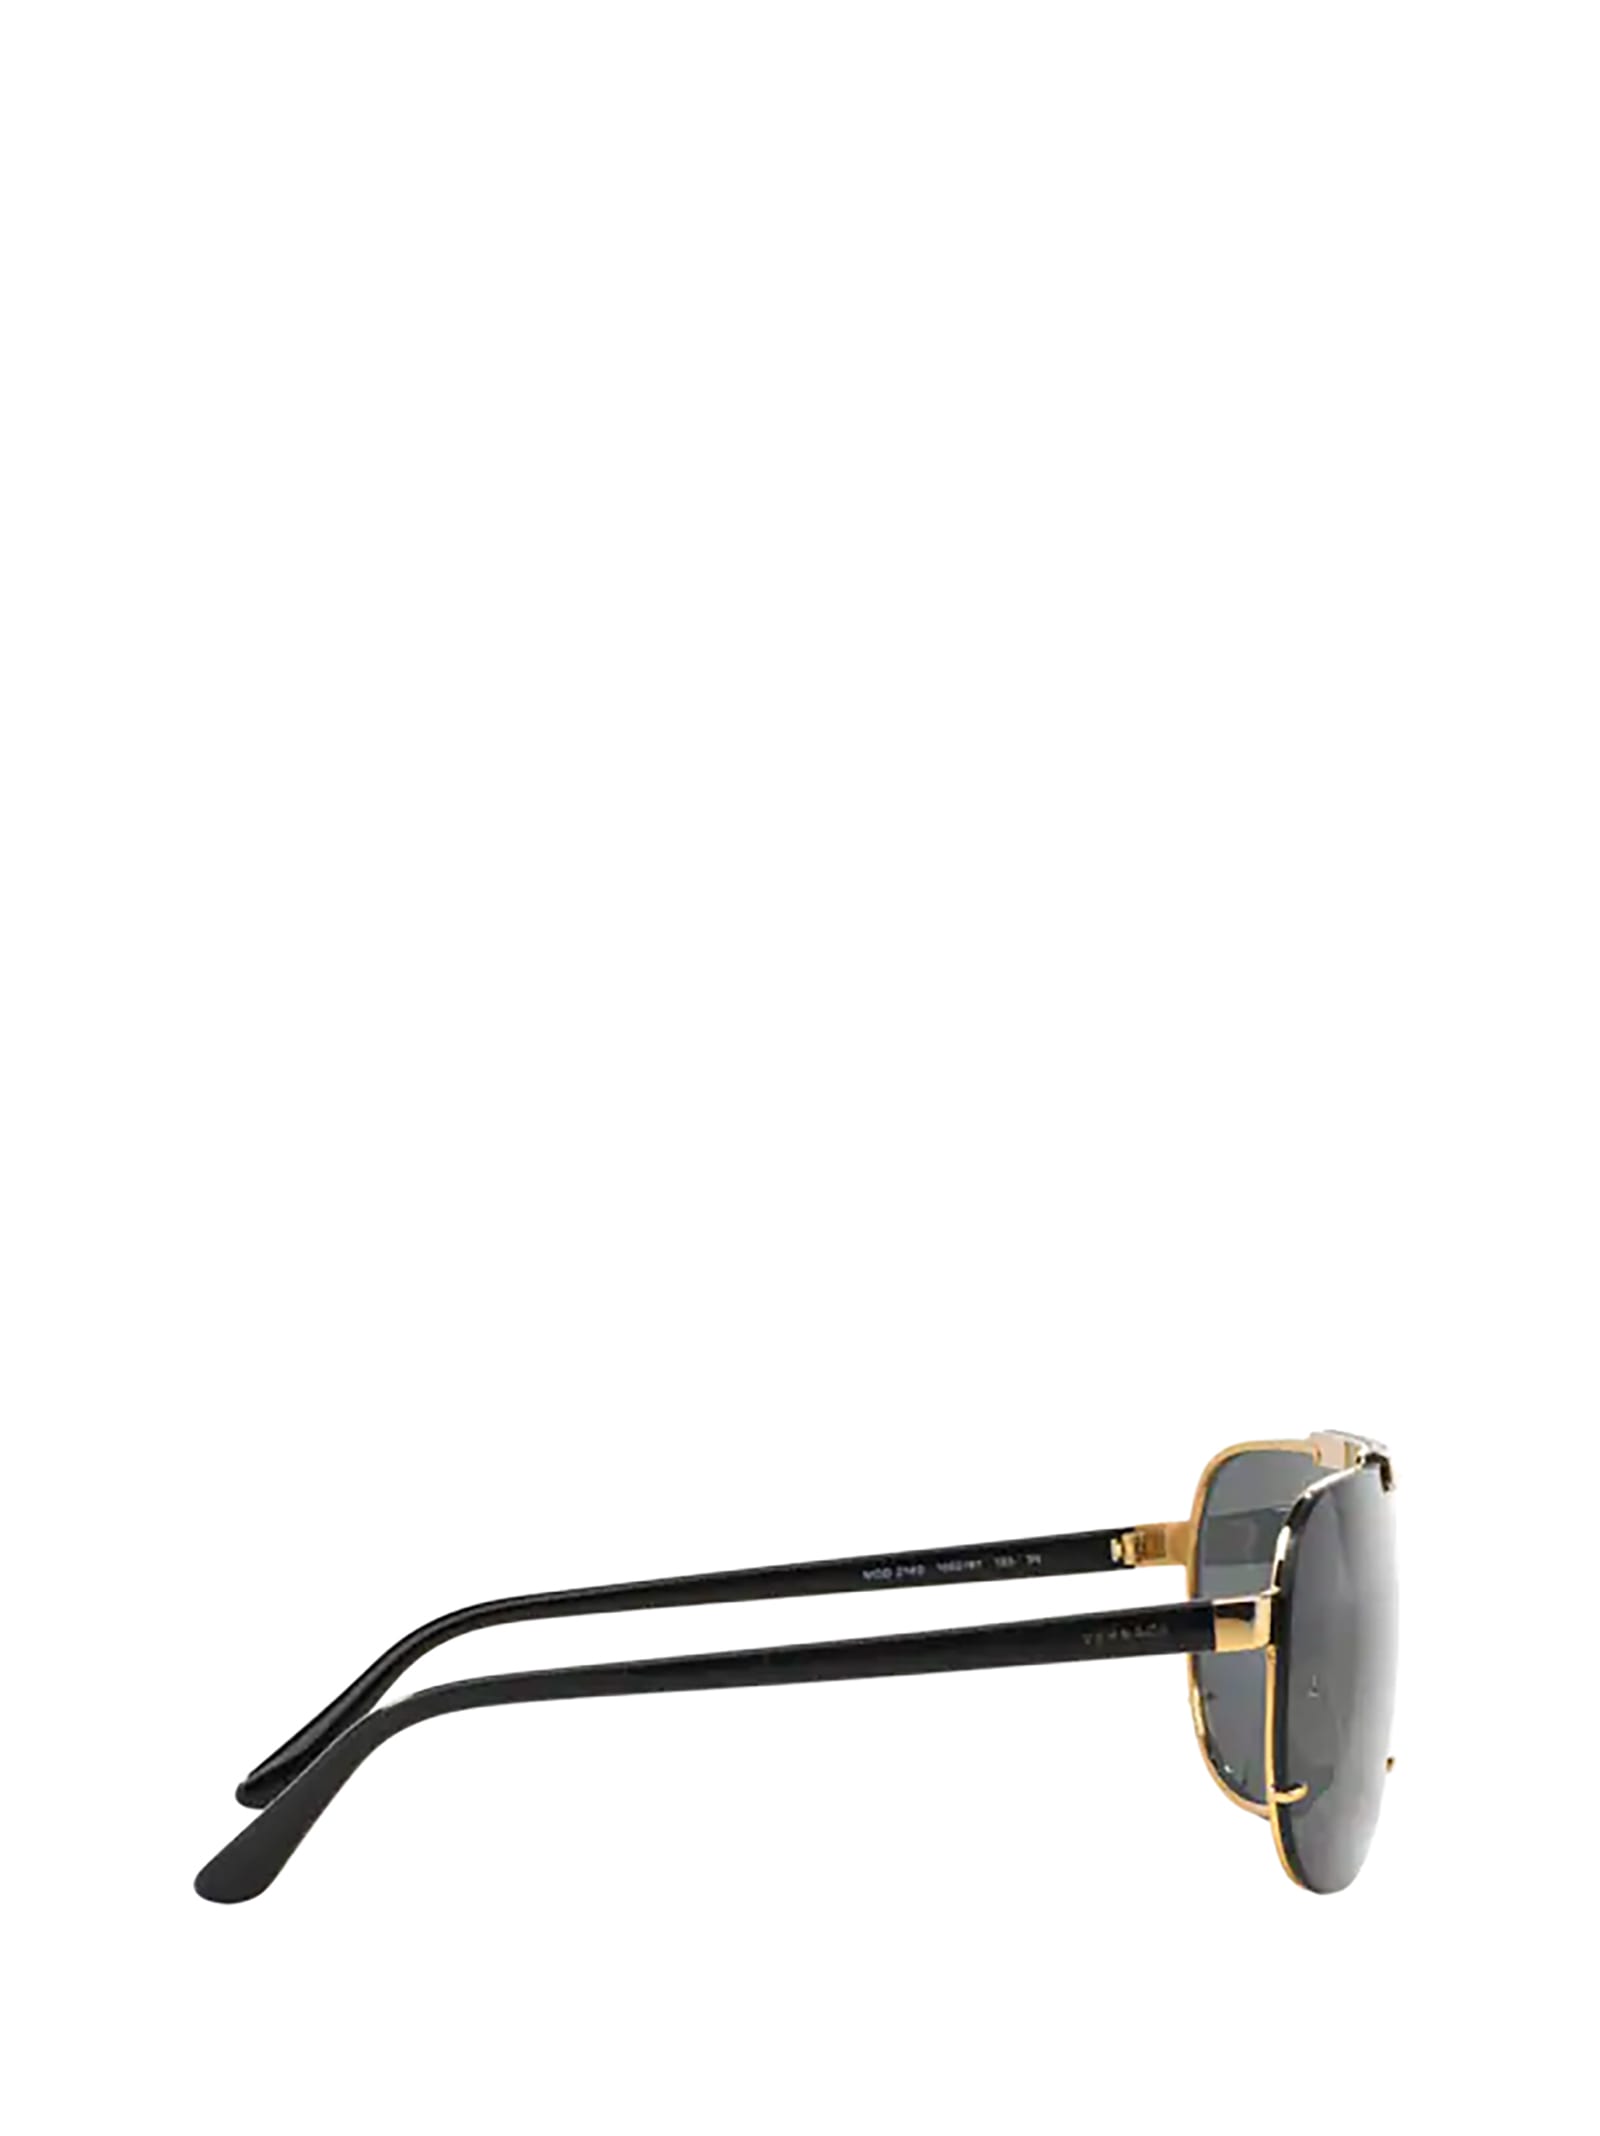 Shop Versace Ve2140 Gold Sunglasses